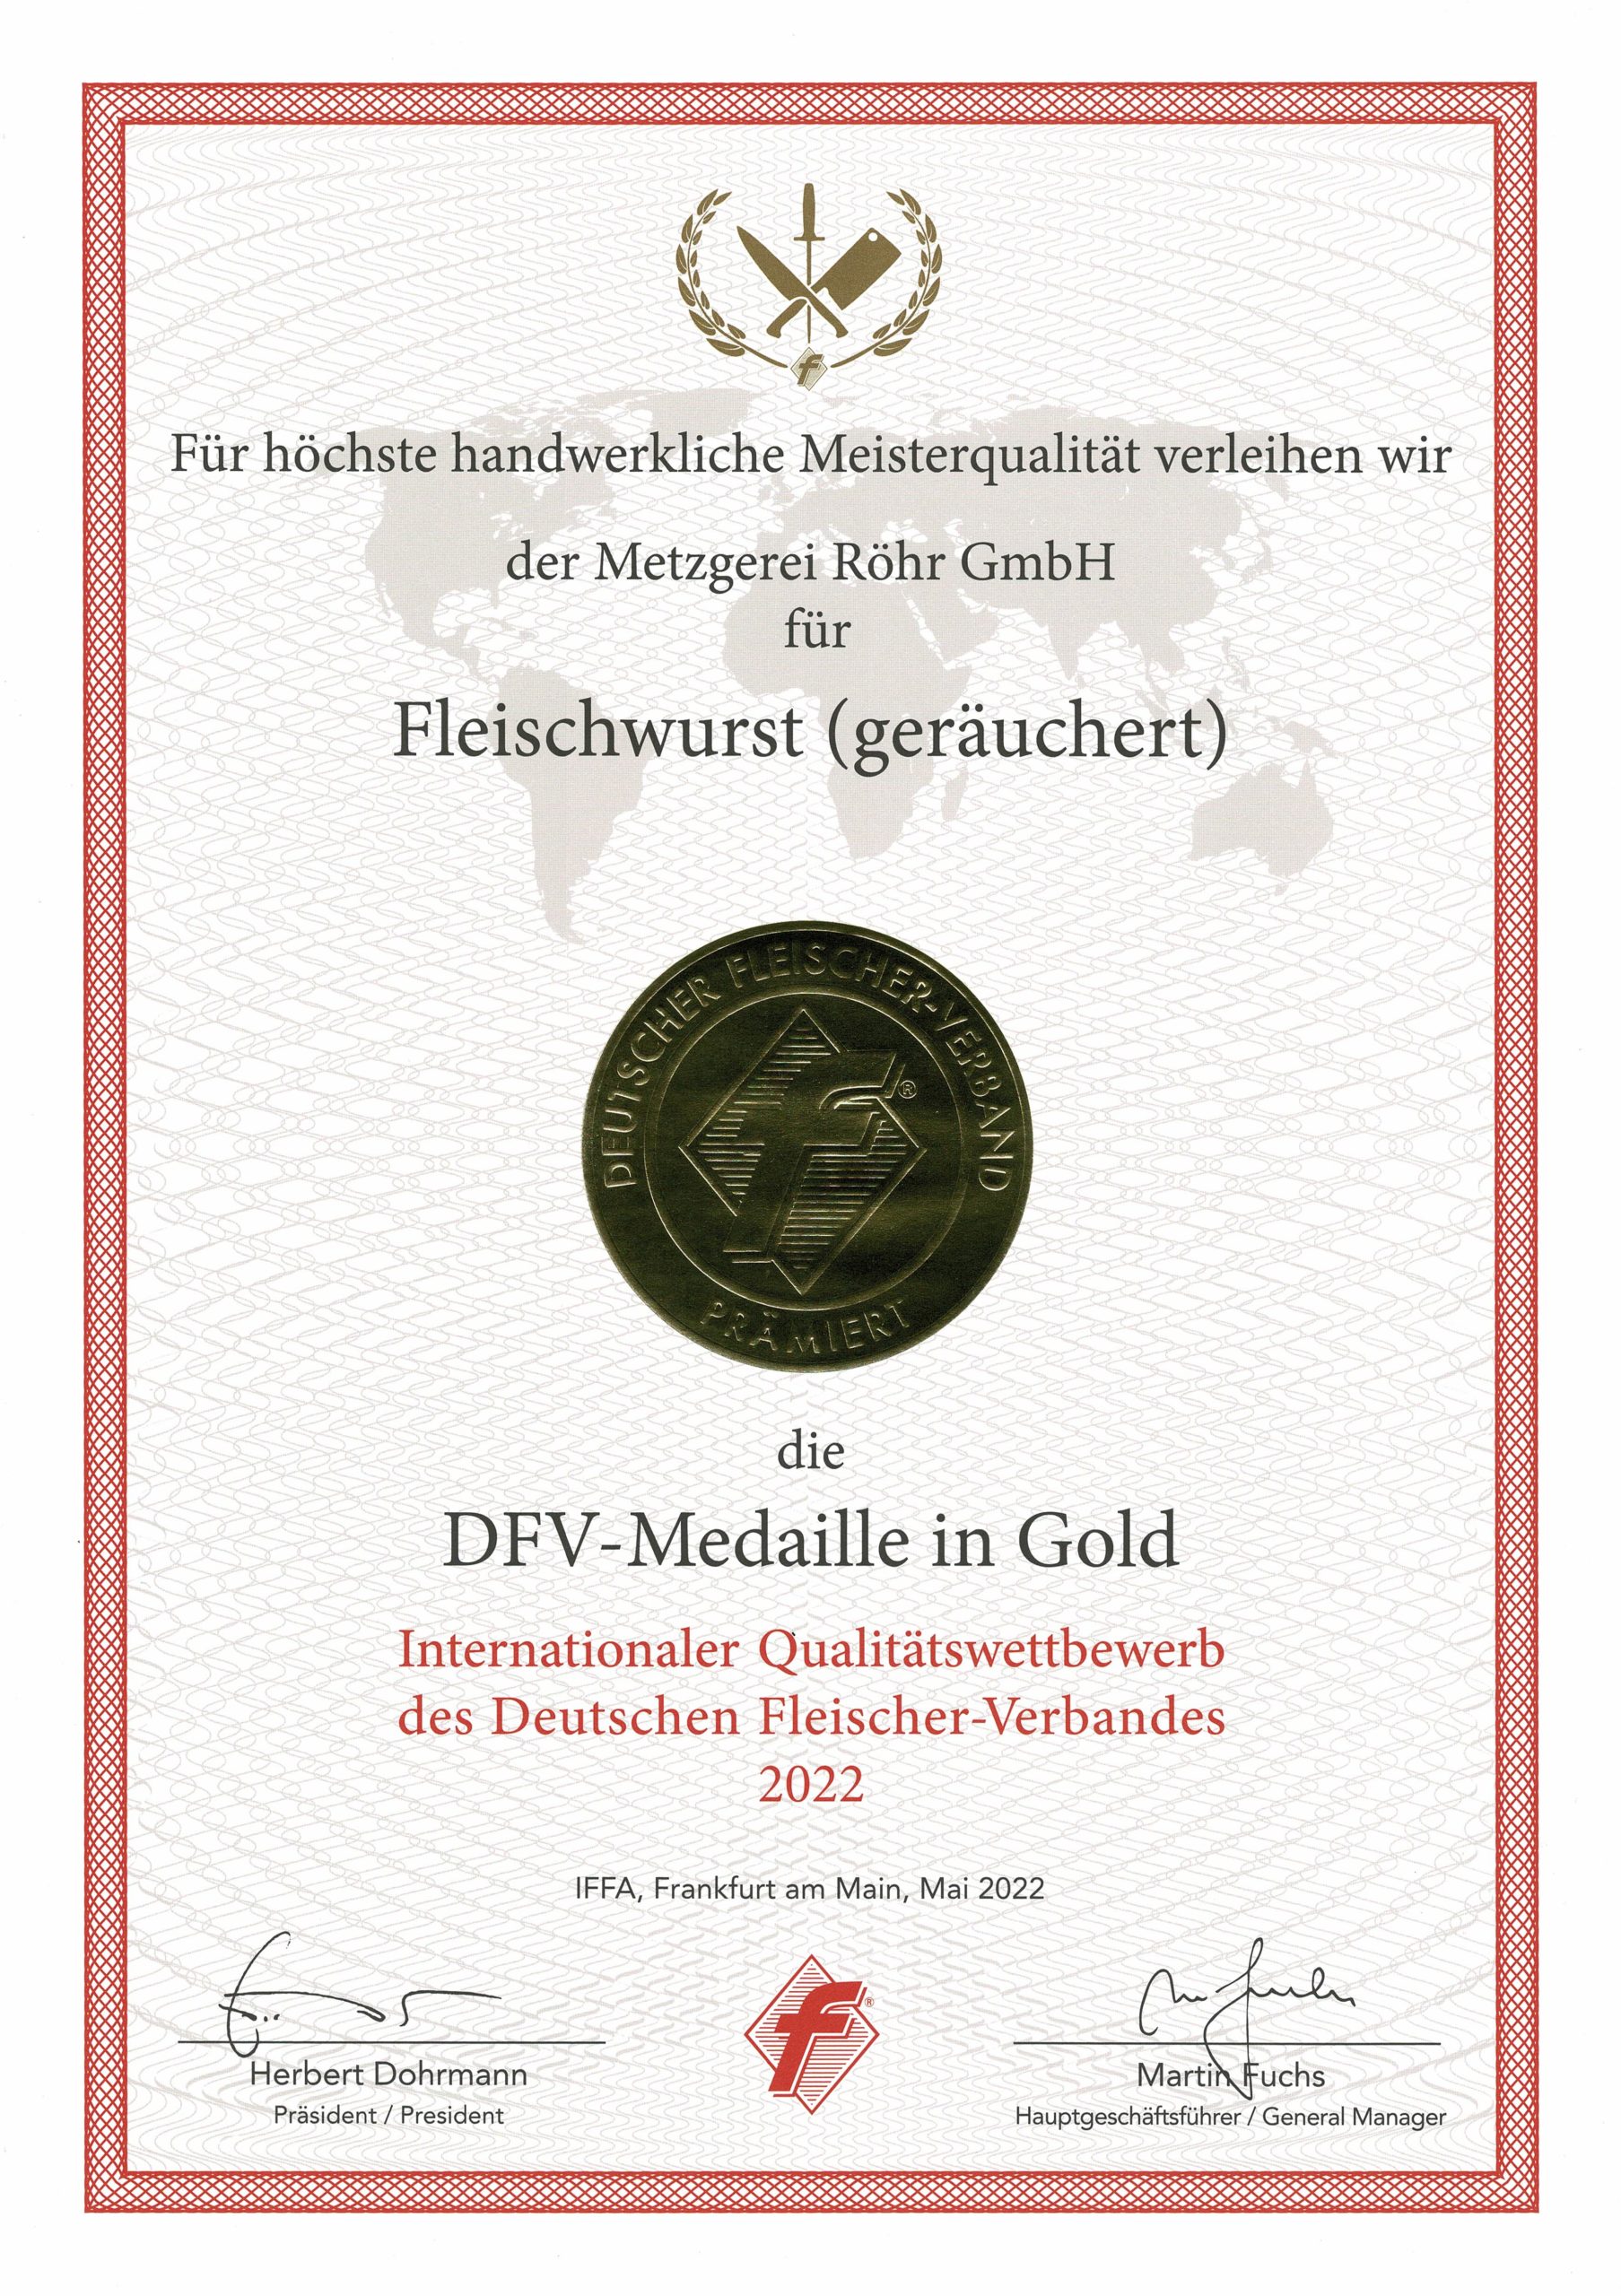 DFV-Medaille in Gold für Fleischwurst